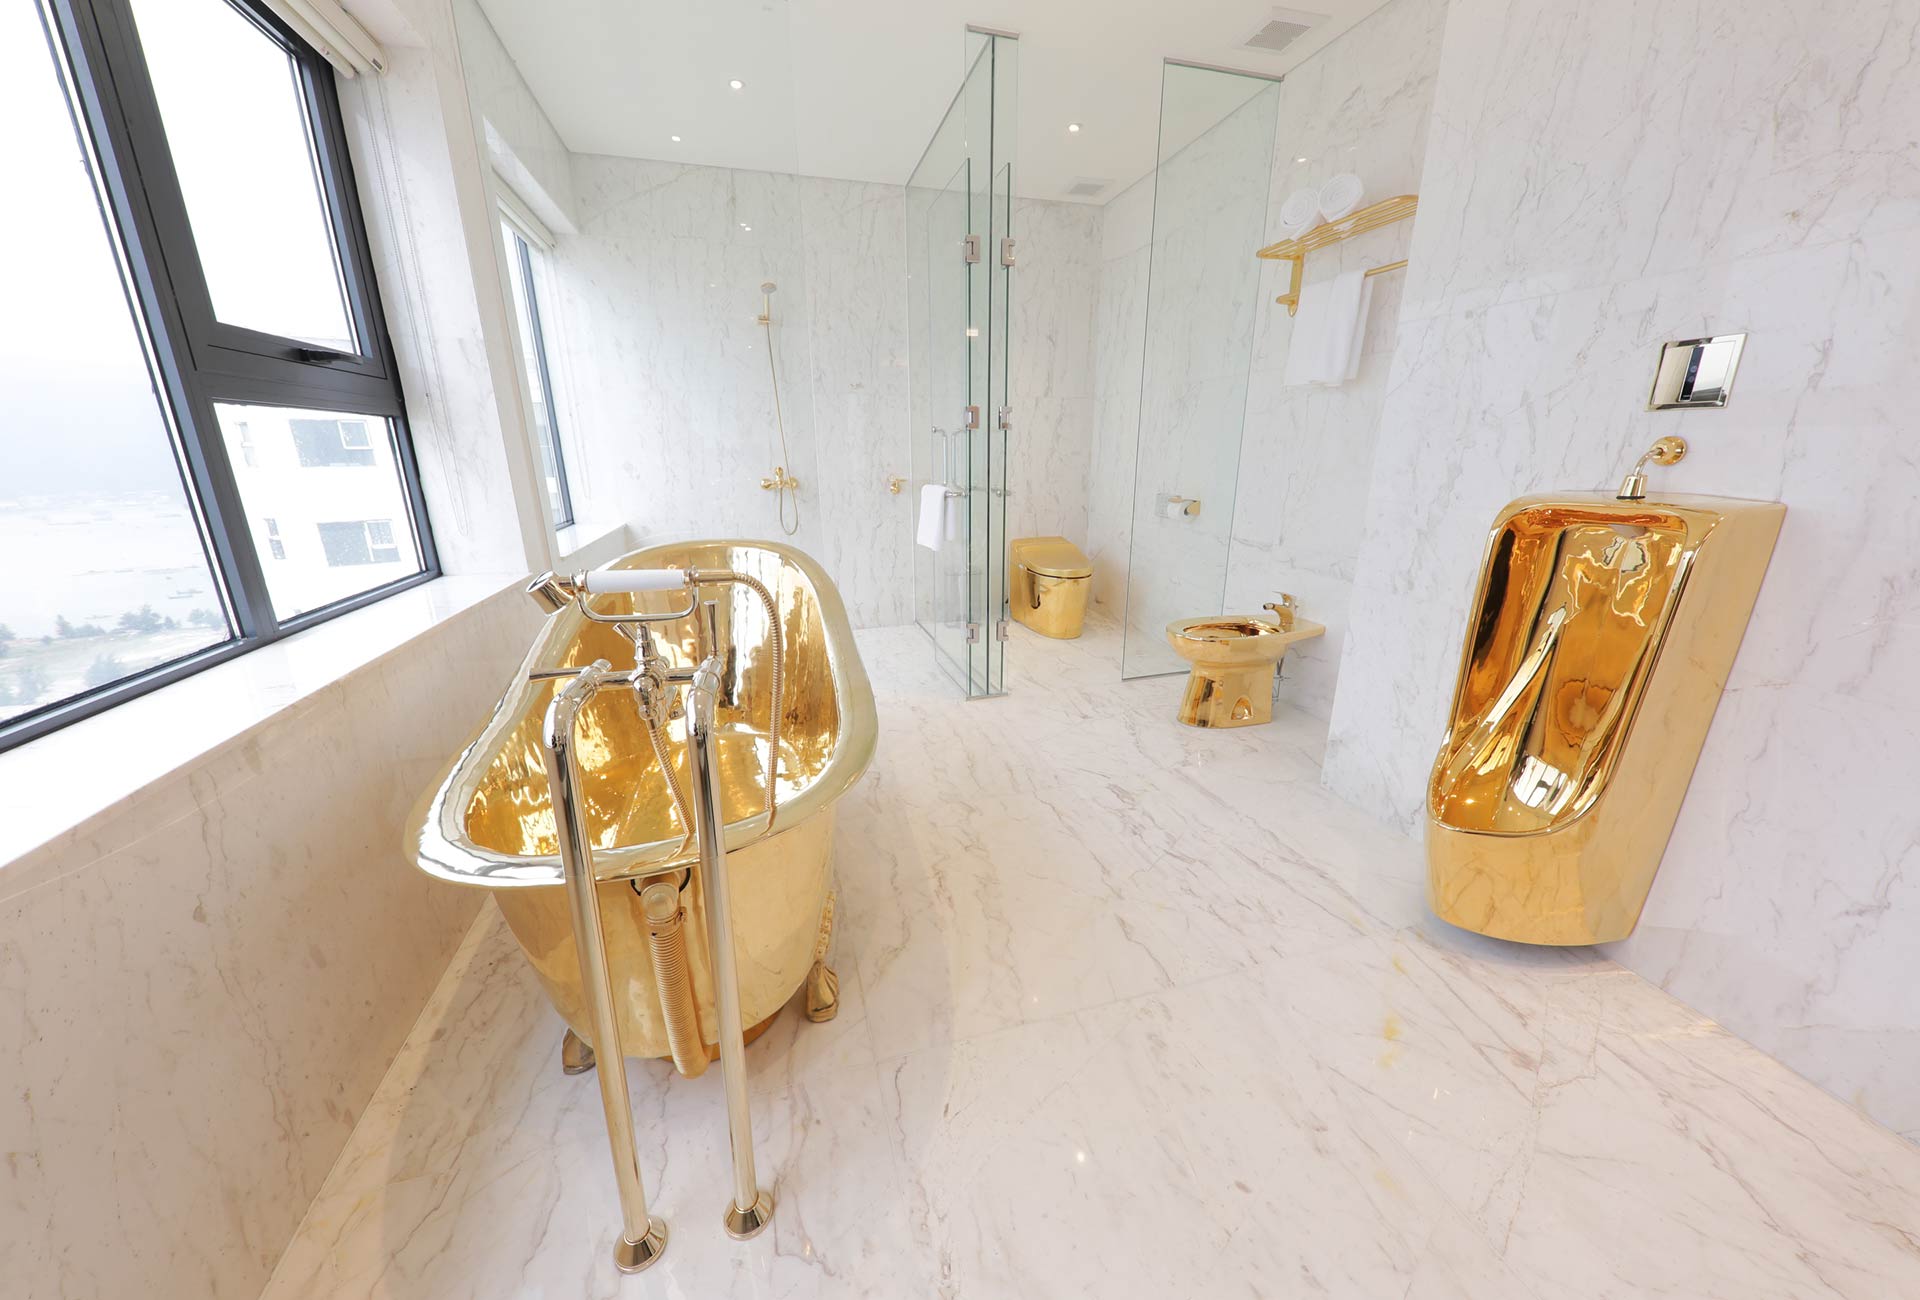 Nội thất nhà vệ sinh được dát vàng 24K toàn bộ